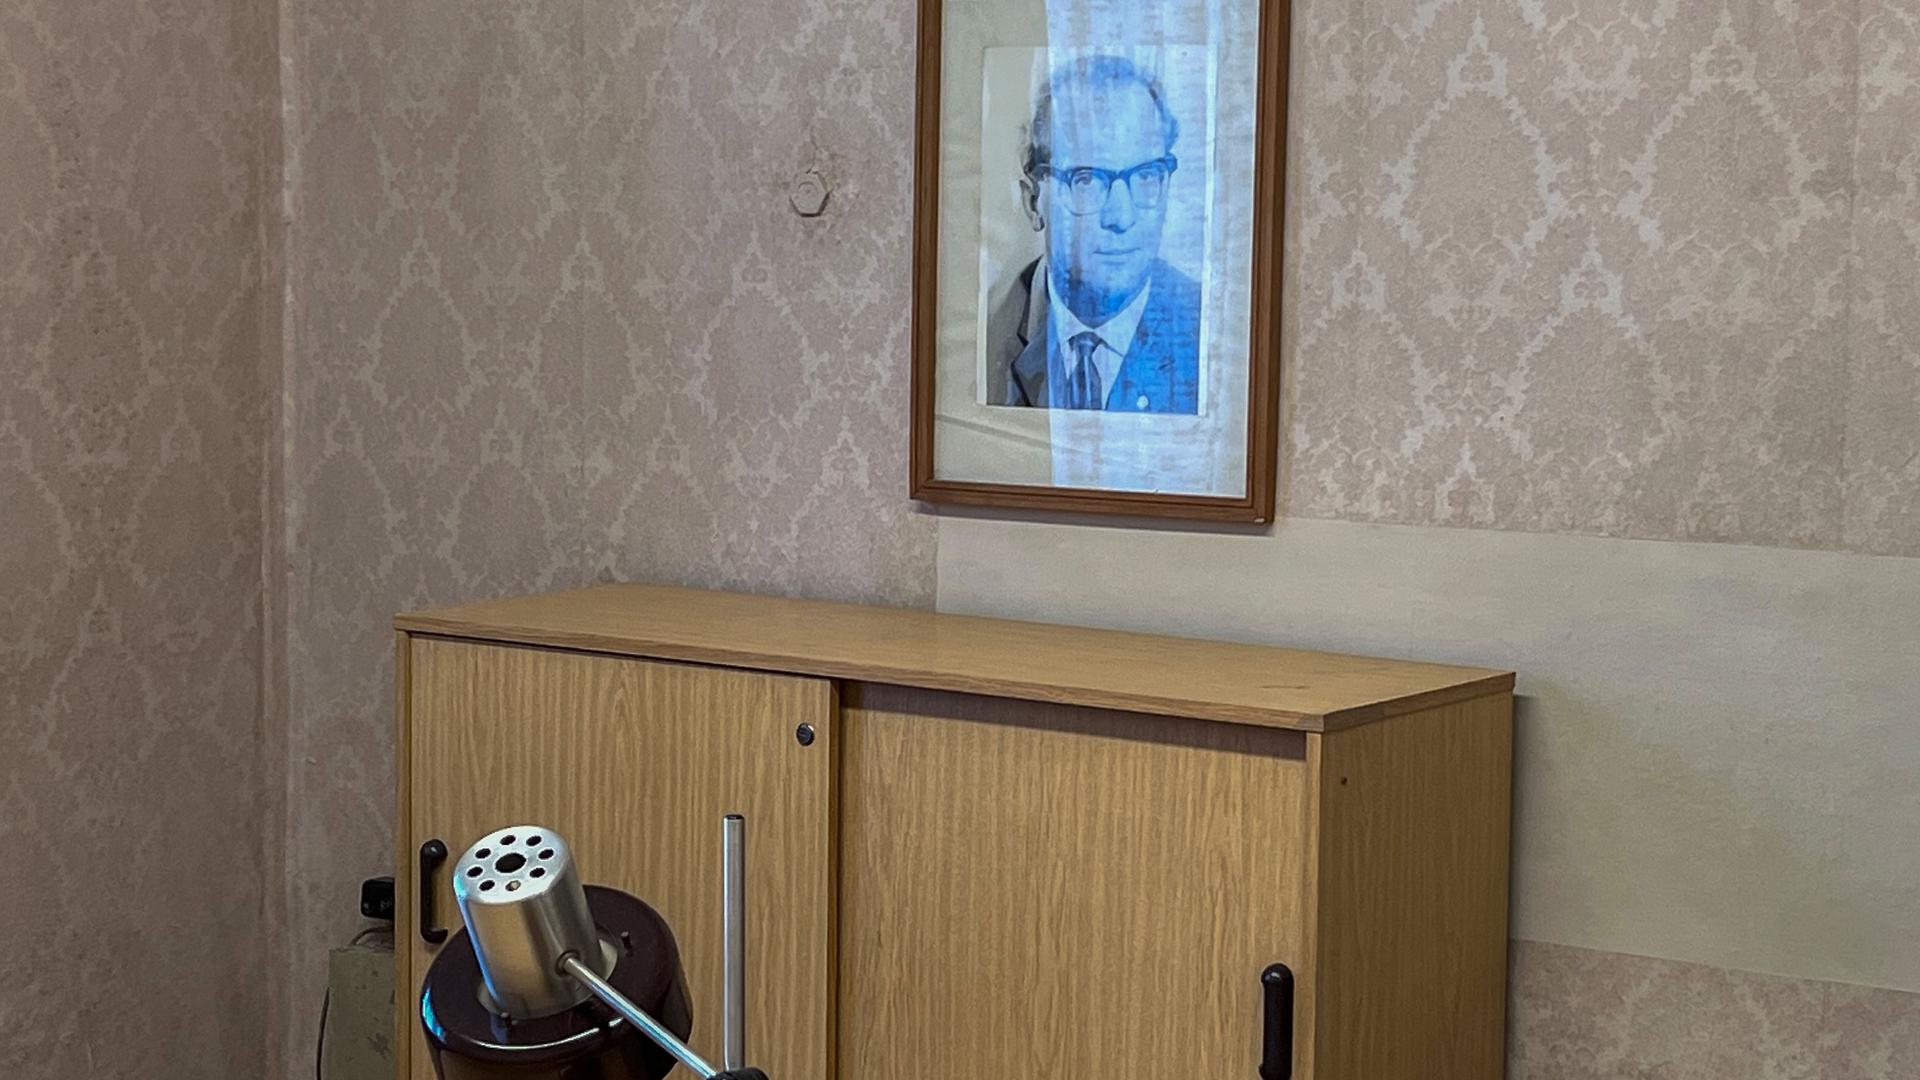 Blick in ein ehemaliges Büro in der ehemaligen Untersuchungshaftanstalt der Stasi in Berlin-Hohenschönhausen, an der Wand hängt ein Bild von Erich Honecker.